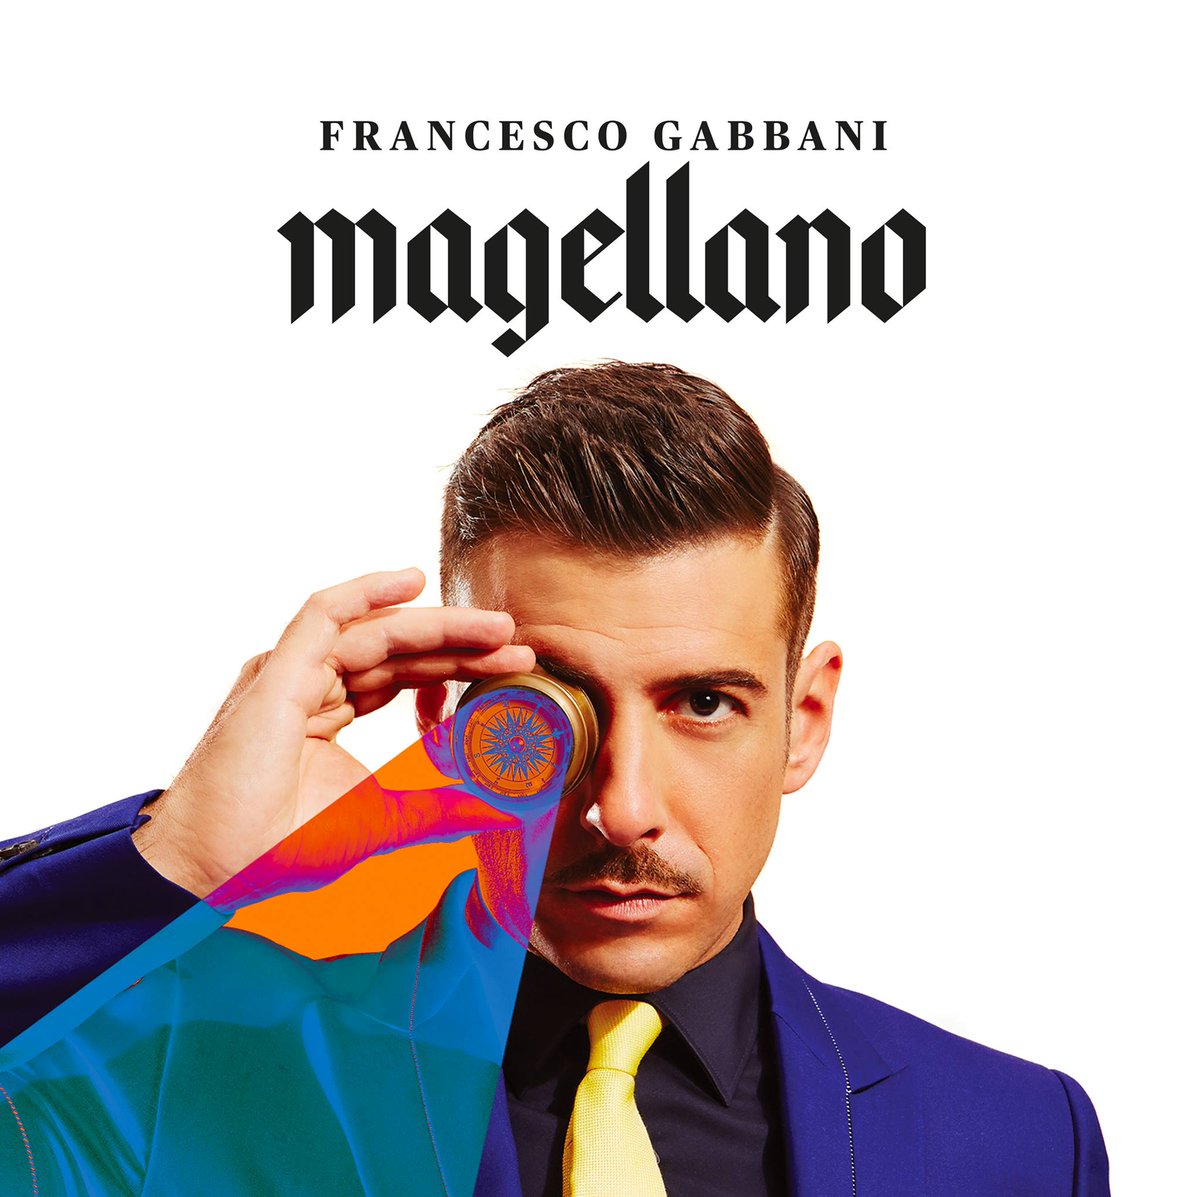 Francesco Gabbani in concerto il 29 giugno a Catania